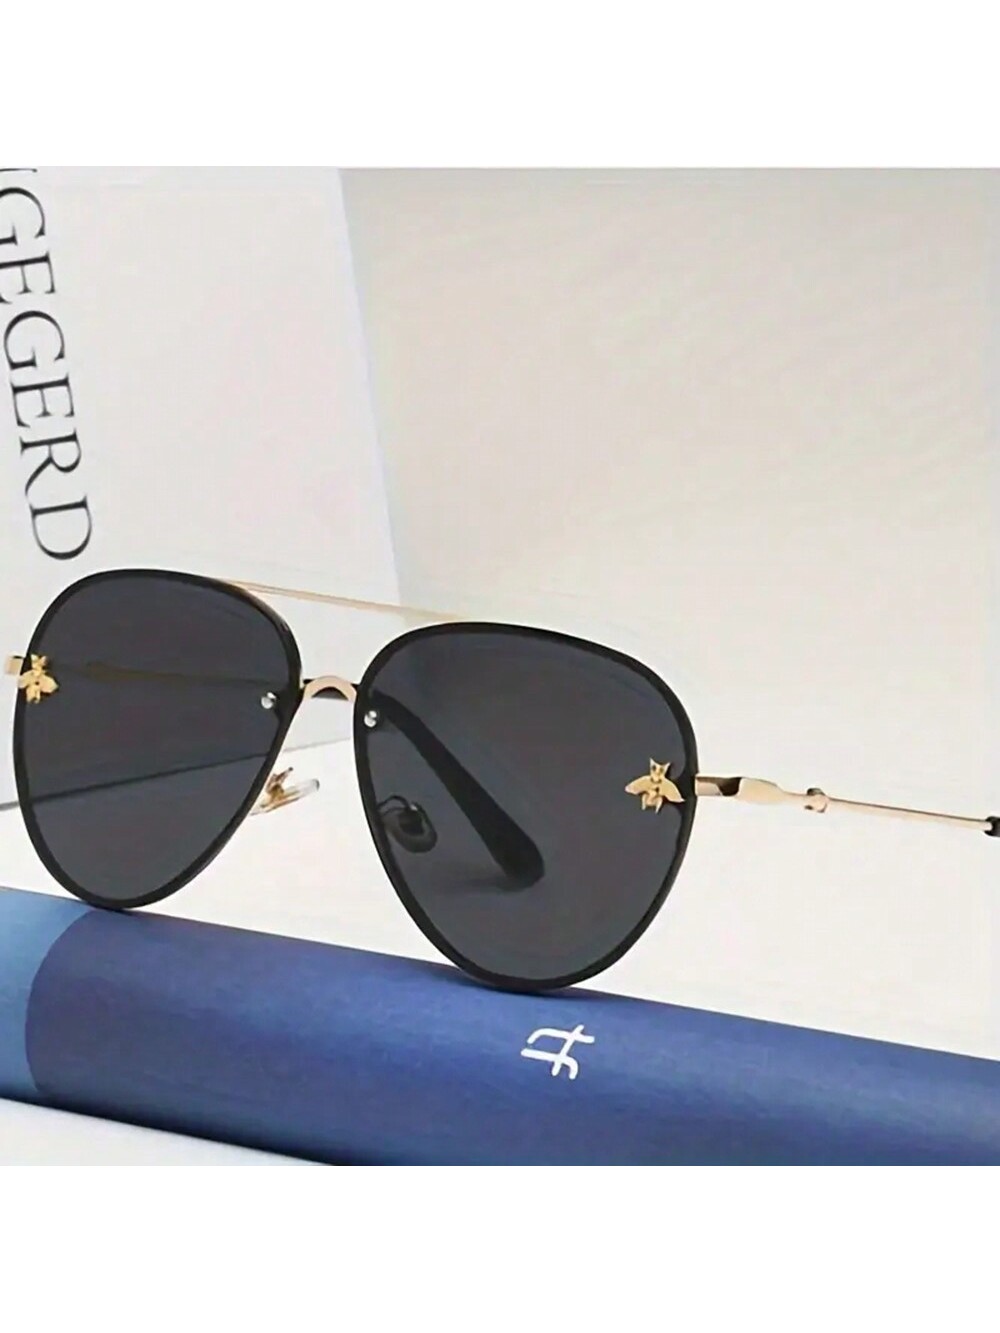 цена 1 шт. новые модные квадратные металлические солнцезащитные очки унисекс в стиле ретро Little Bee